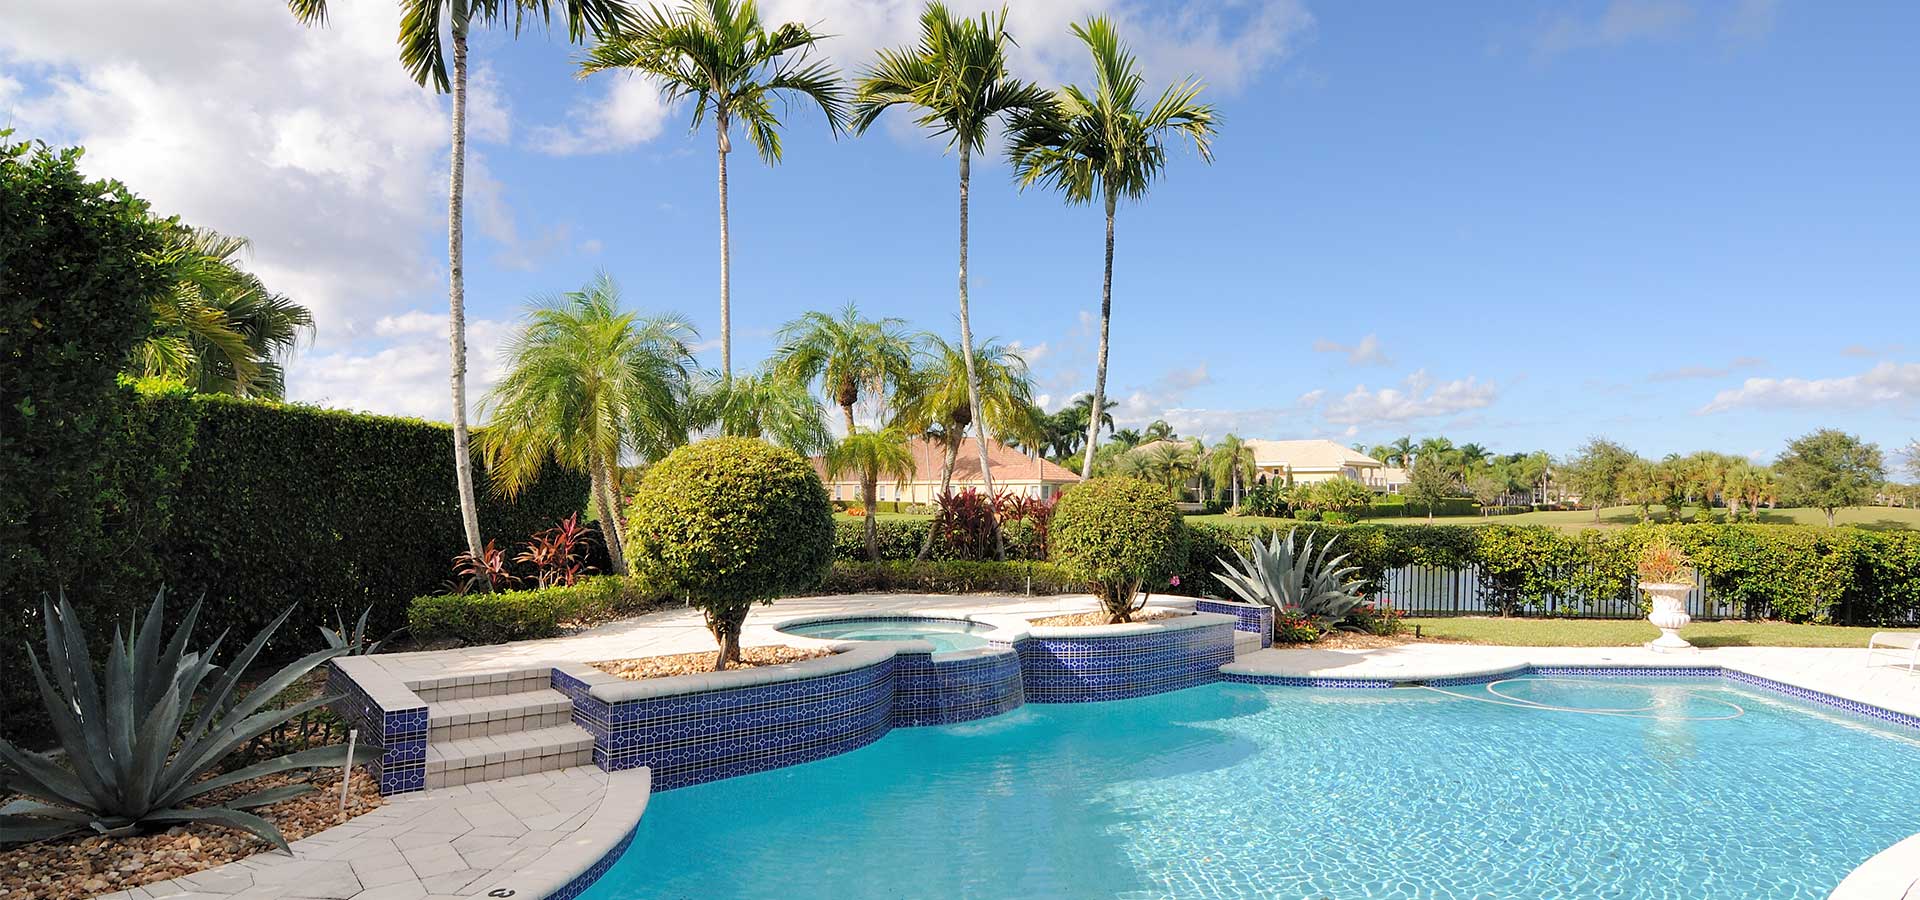 Orlando Villas, Florida Vacation Rental Homes and Villas in